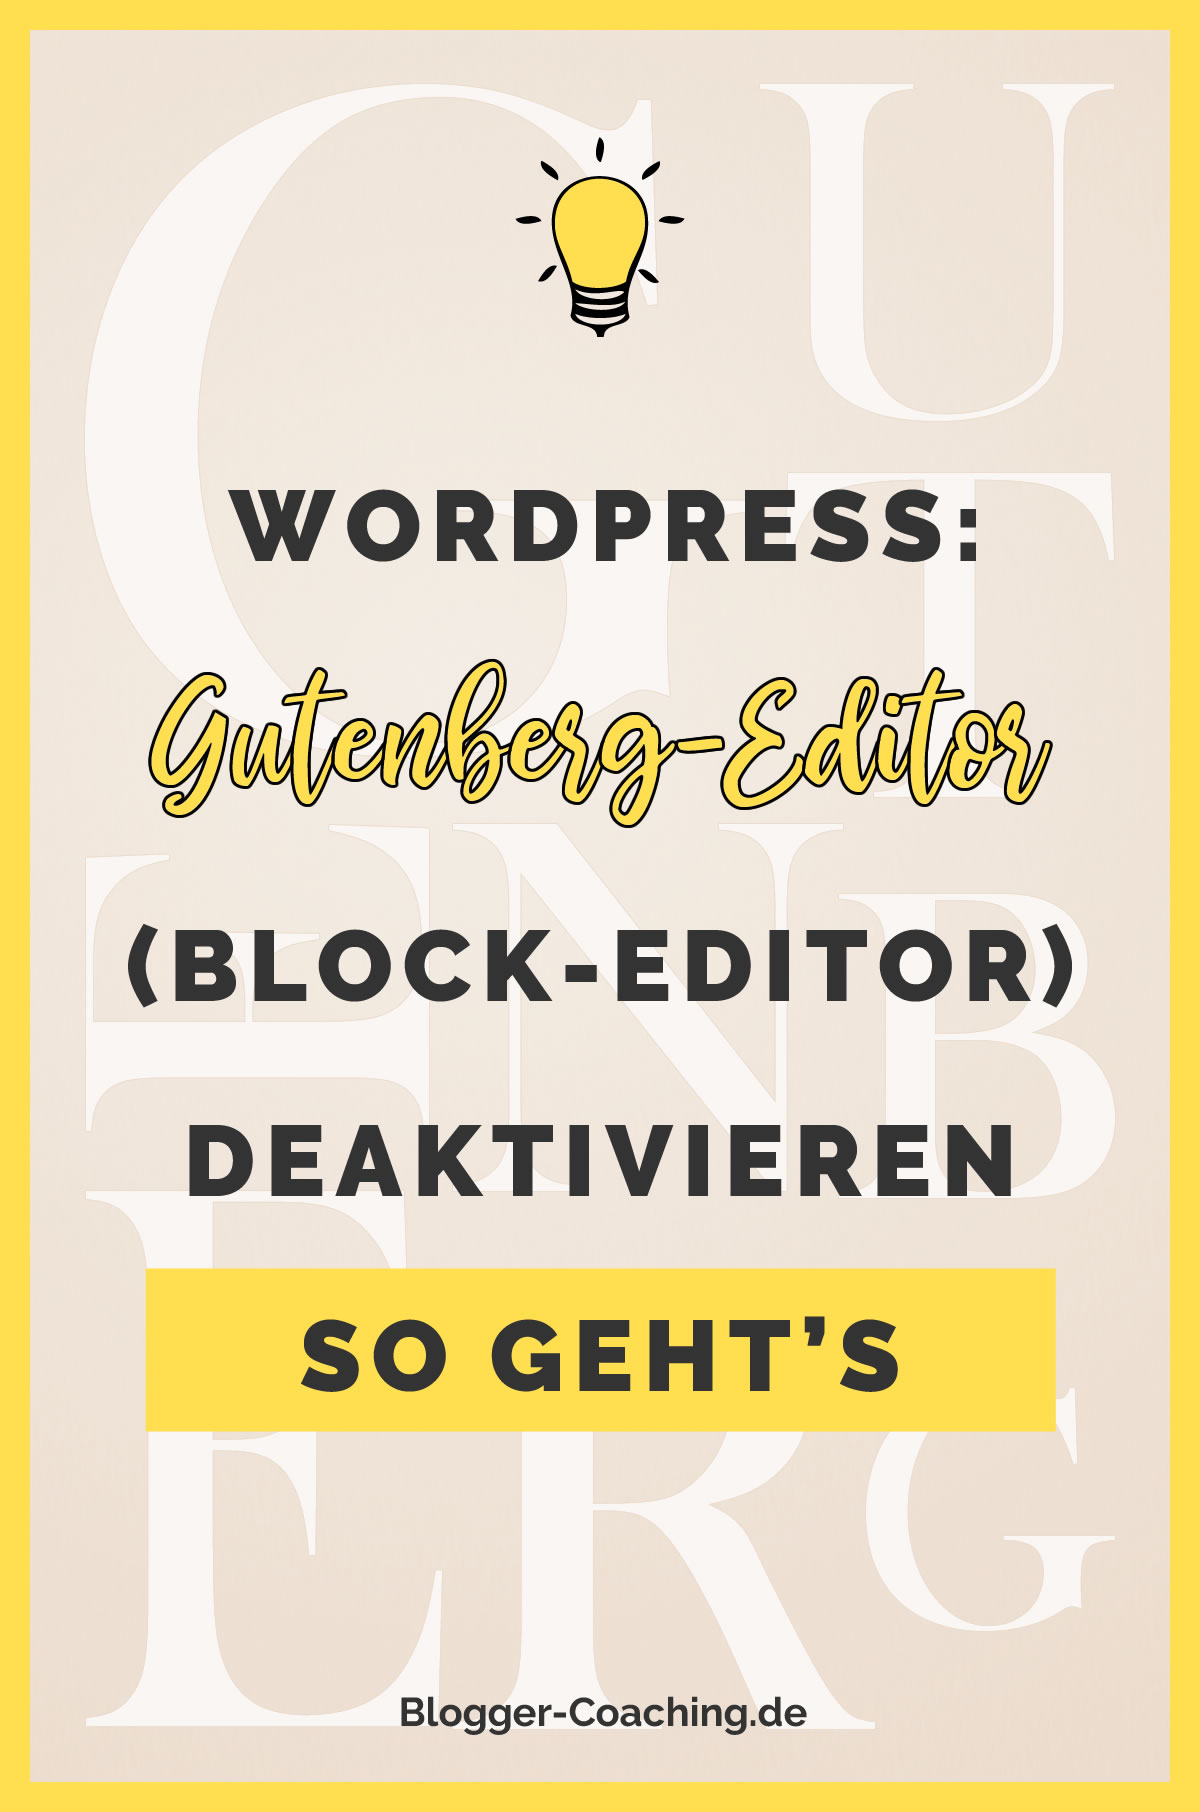 WordPress: Gutenberg Editor deaktivieren - So einfach geht's | Blogger-Coaching.de - Erfolgreich bloggen & Geld verdienen #erfolg #blogger